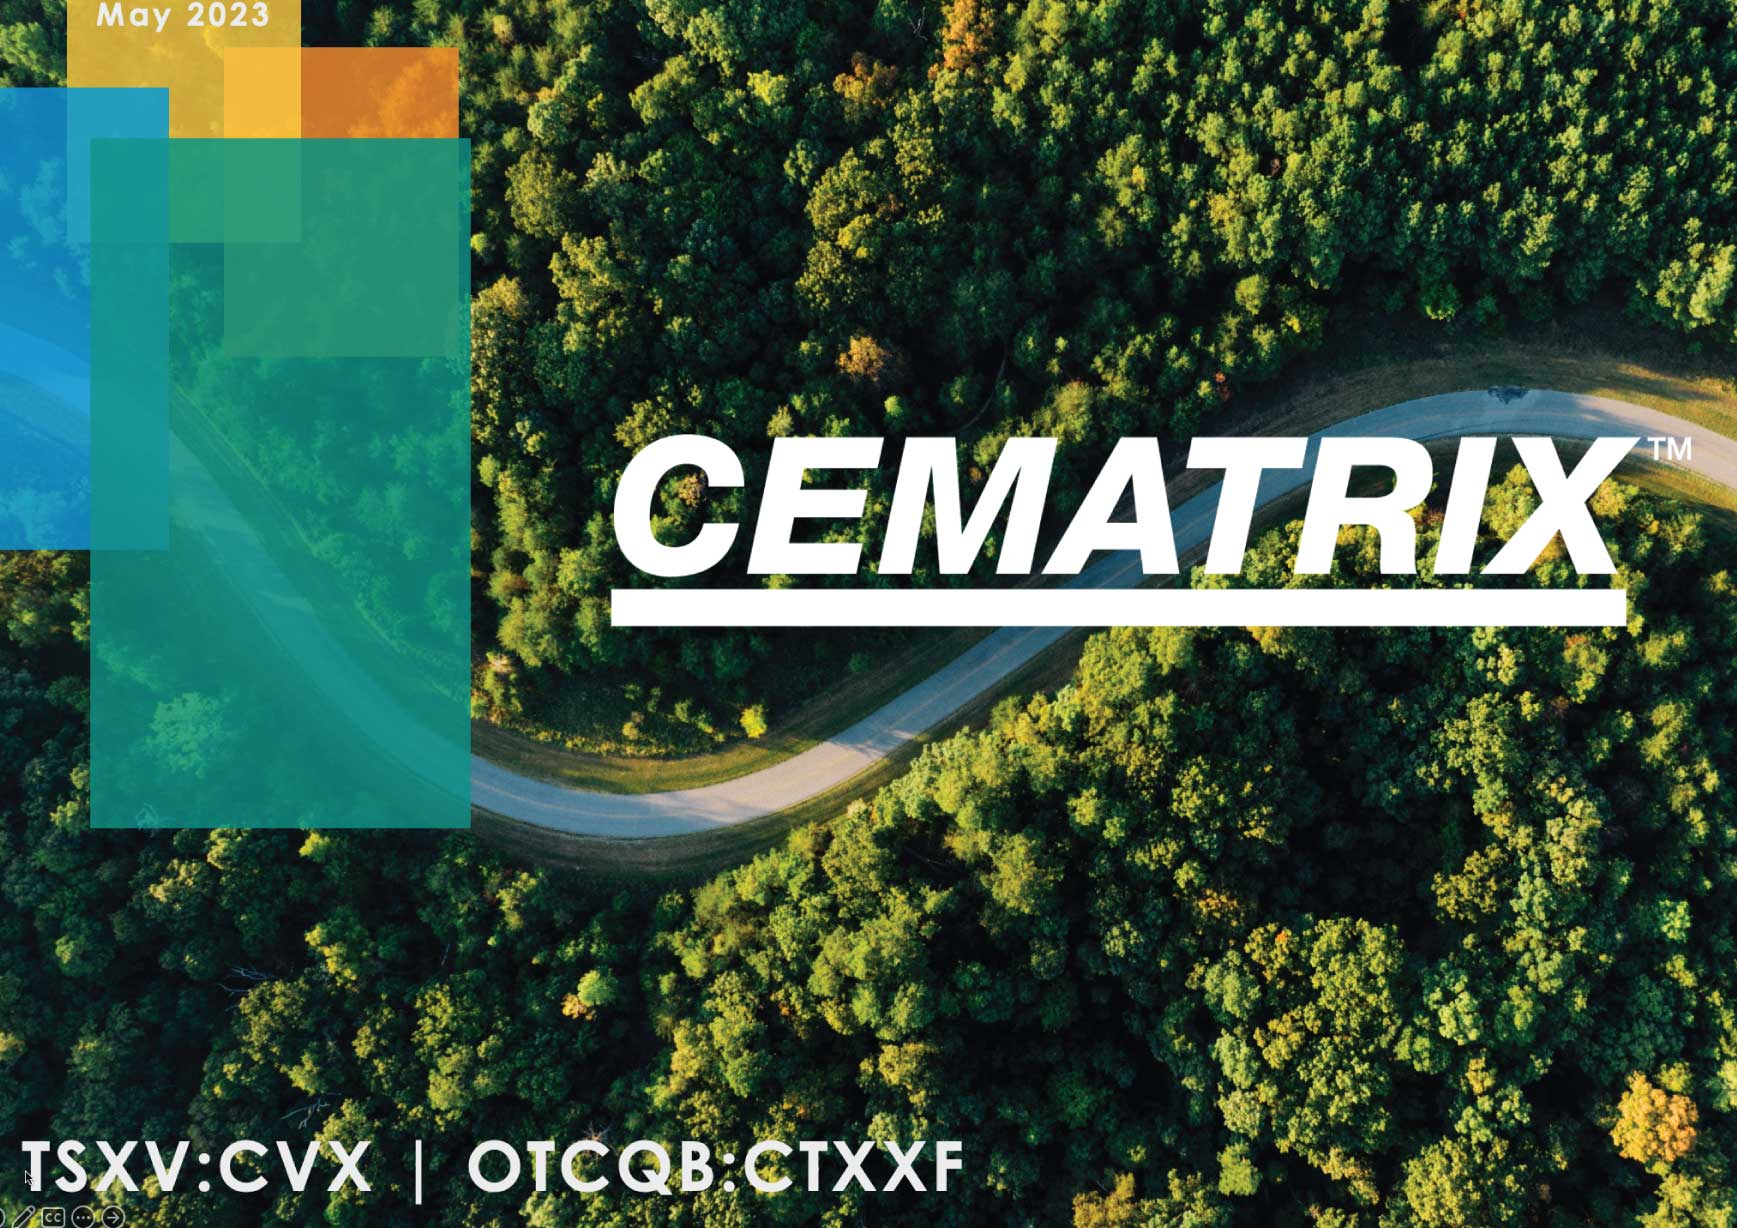 Cematrix - Cellular Concrete Solutions